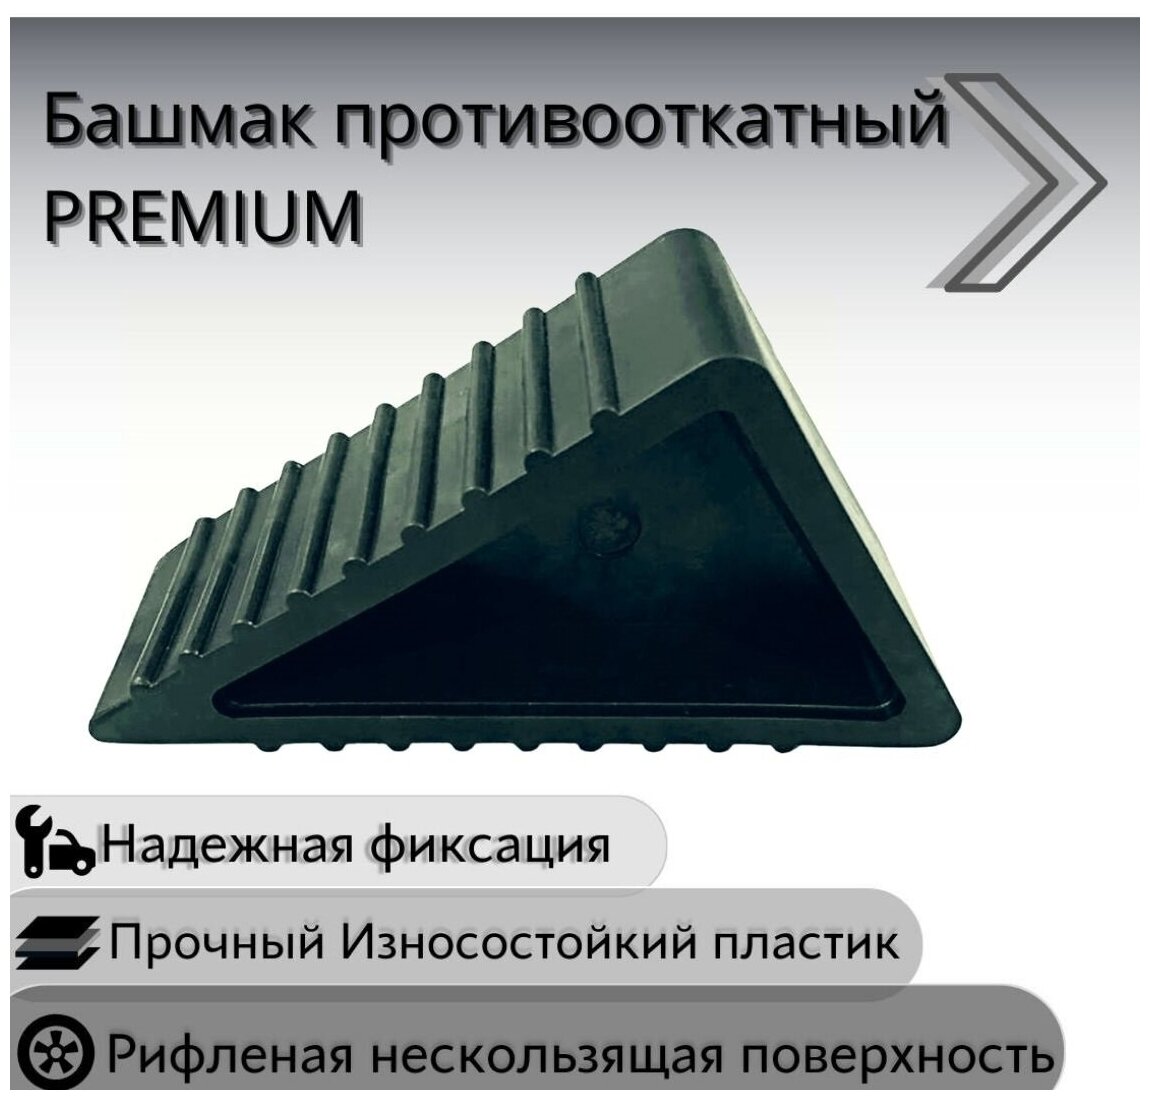 Башмак противооткатный PREMIUM для легковых и грузовых авто (д195ш165в11гл7600гр.) Морозостойкий